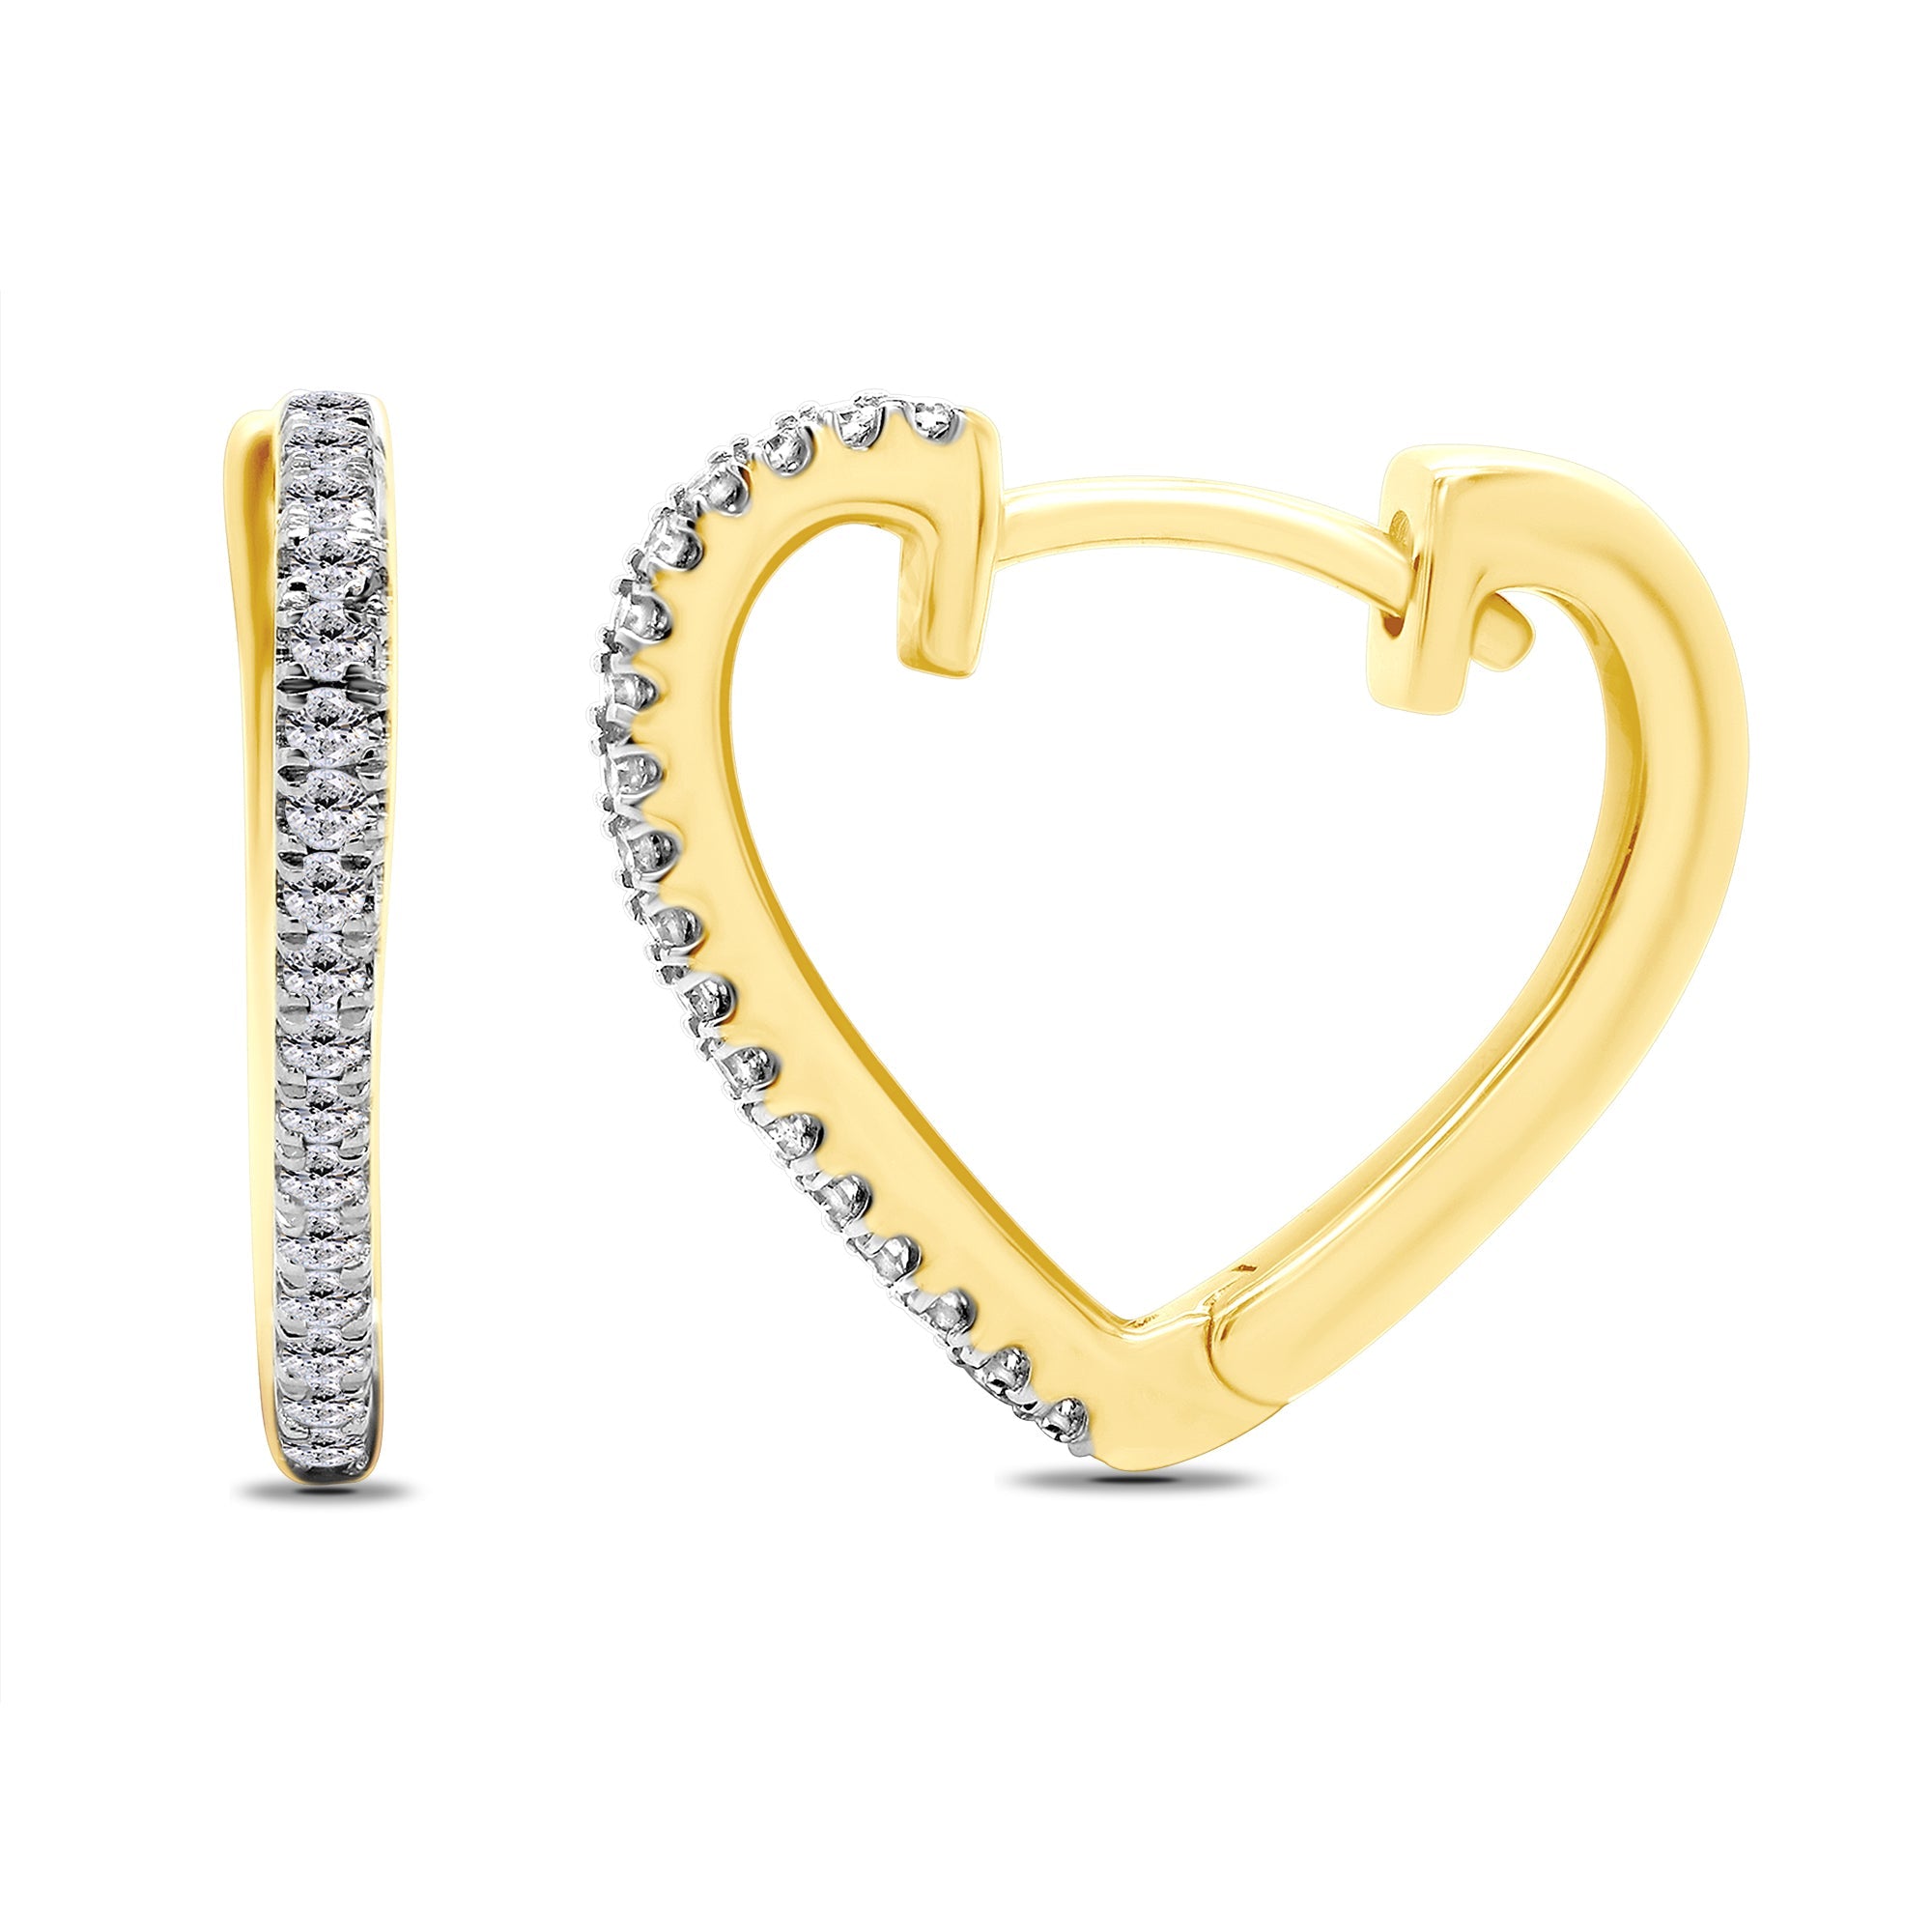 9ct gold scallop edge heart shape diamond set huggy earrings 0.14ct